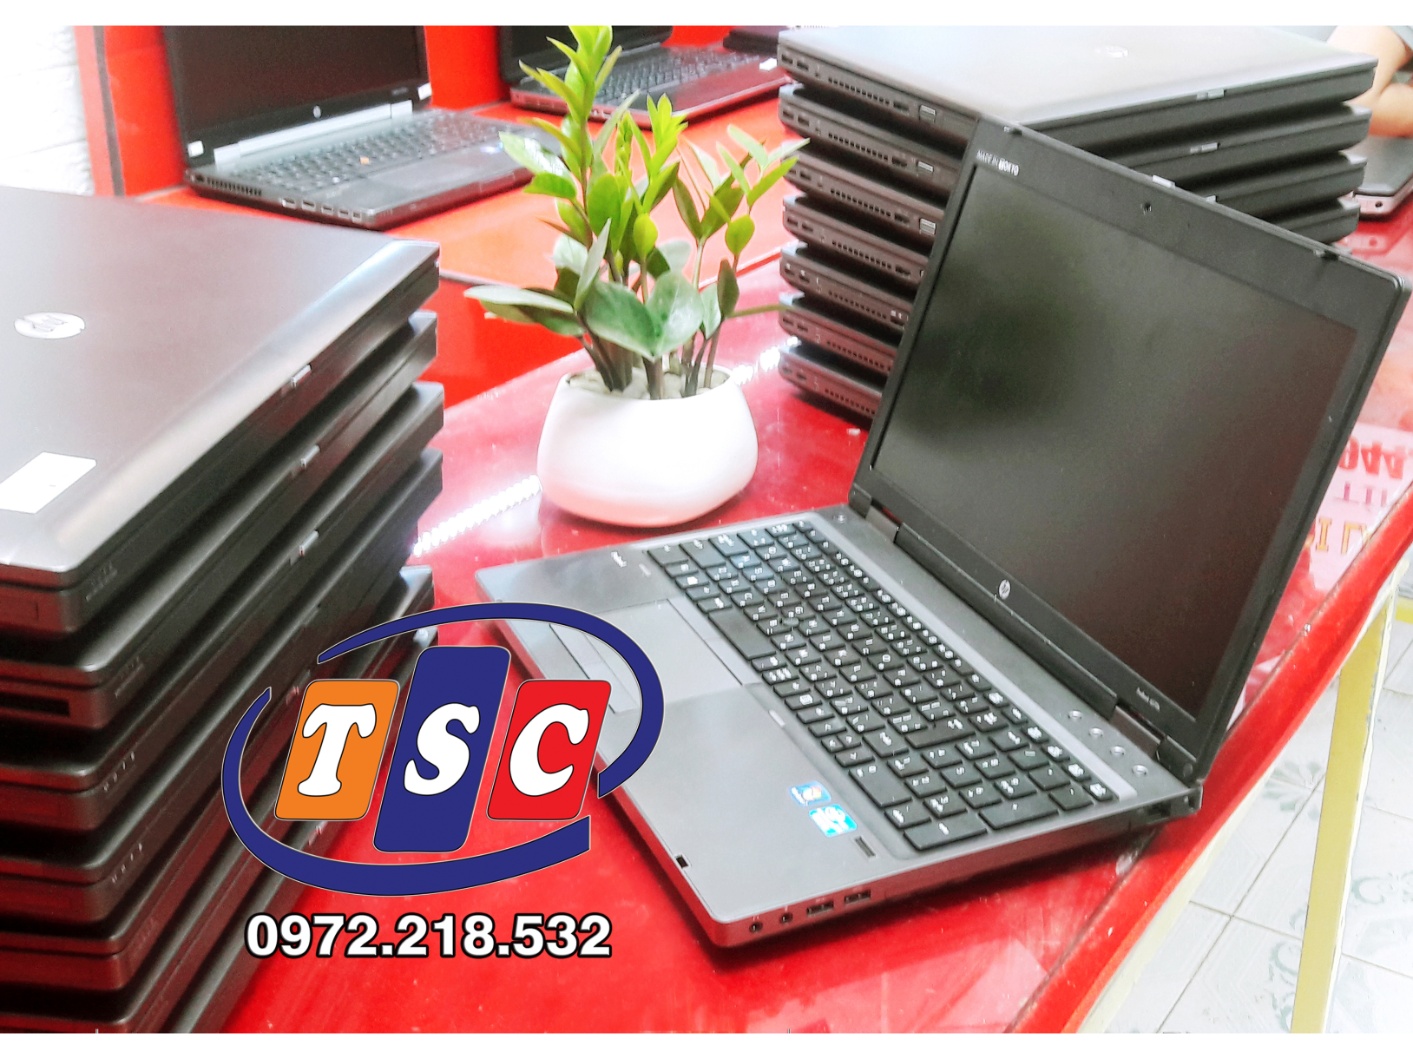 Laptop Hp Probook 6570b i5-3230M | RAM 4GB | HDD 250GB | 15.6” HD | VGA